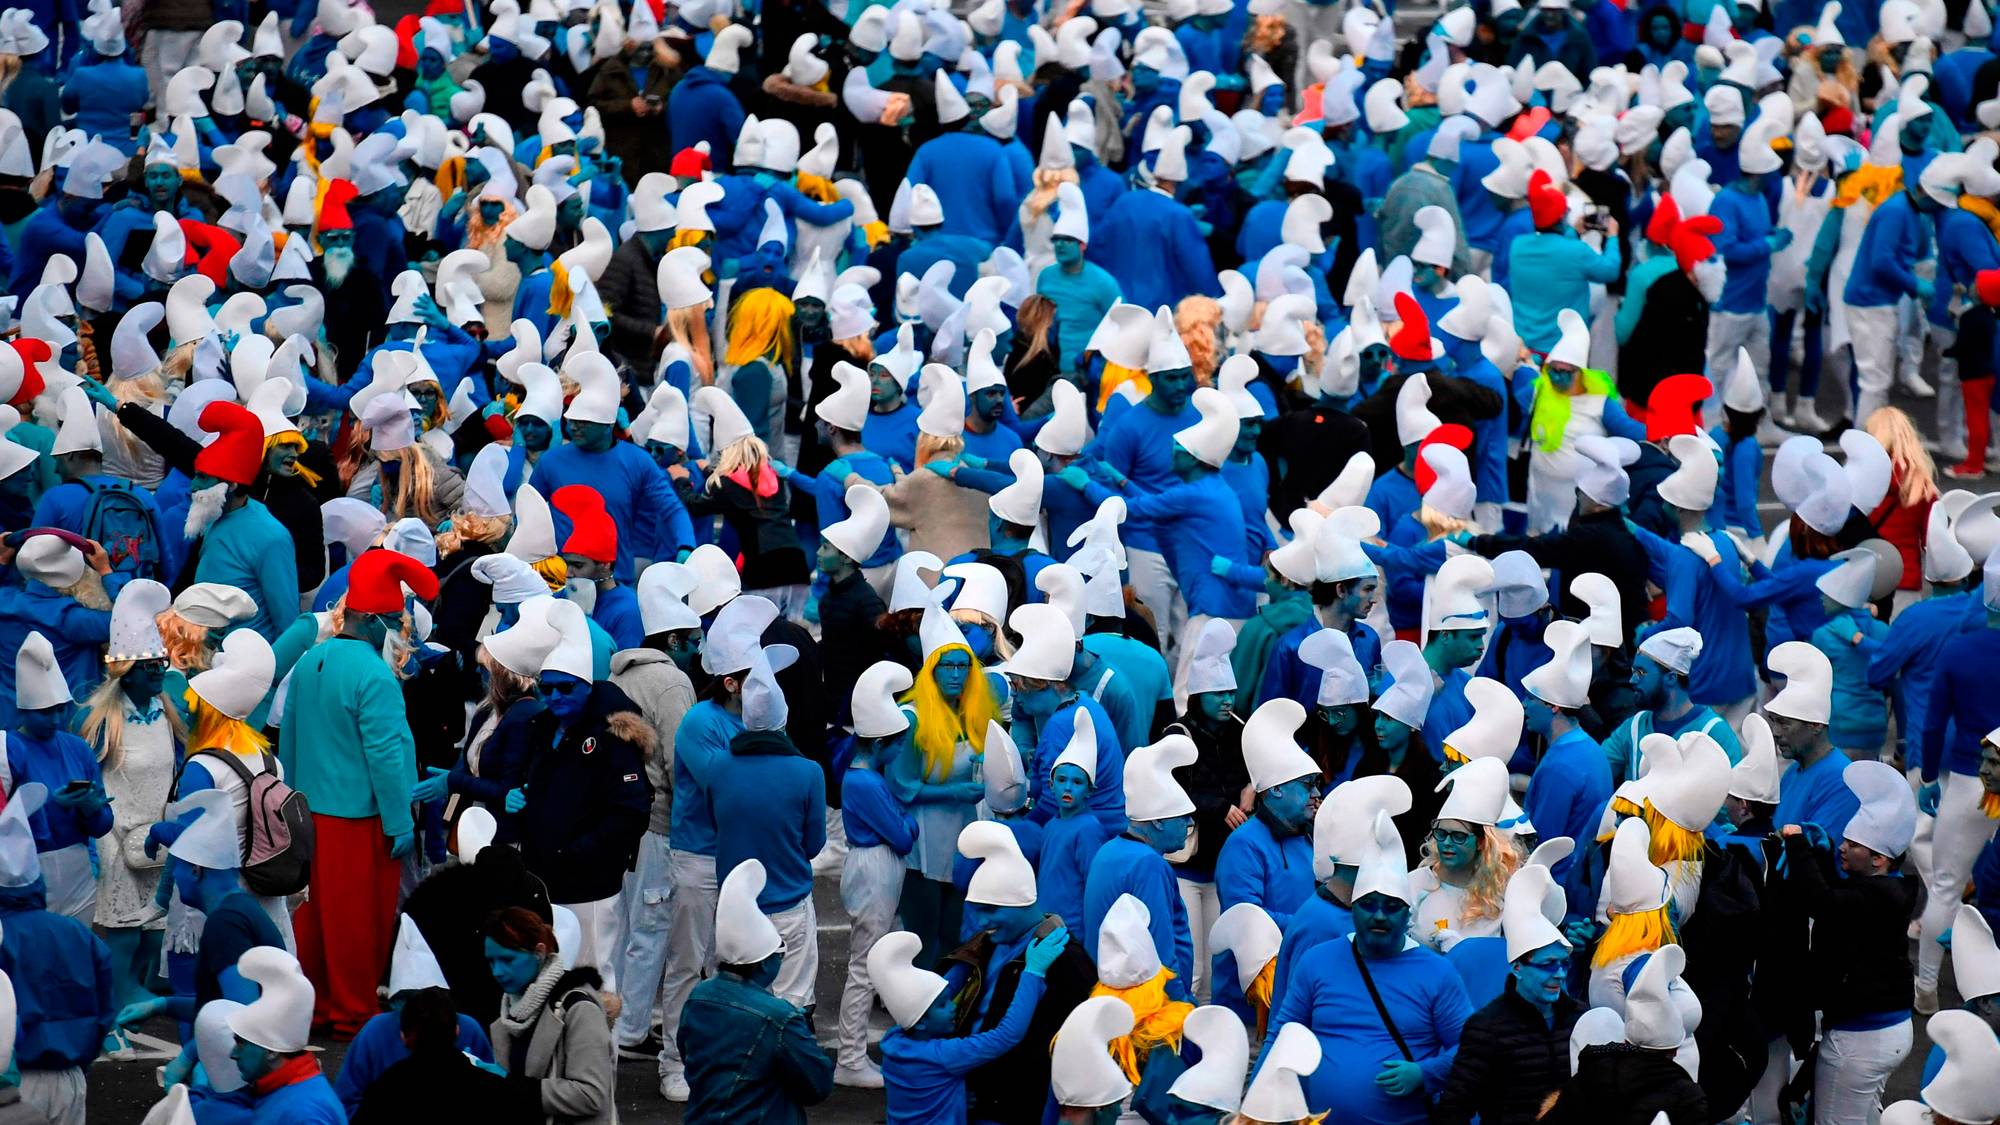 1 июля 2008 год. Толпа смурфиков. Самое большое количество людей одетых в Смурфов. Люди Смурфы. Самое большое Кол-во людей одетых в Смурфов.